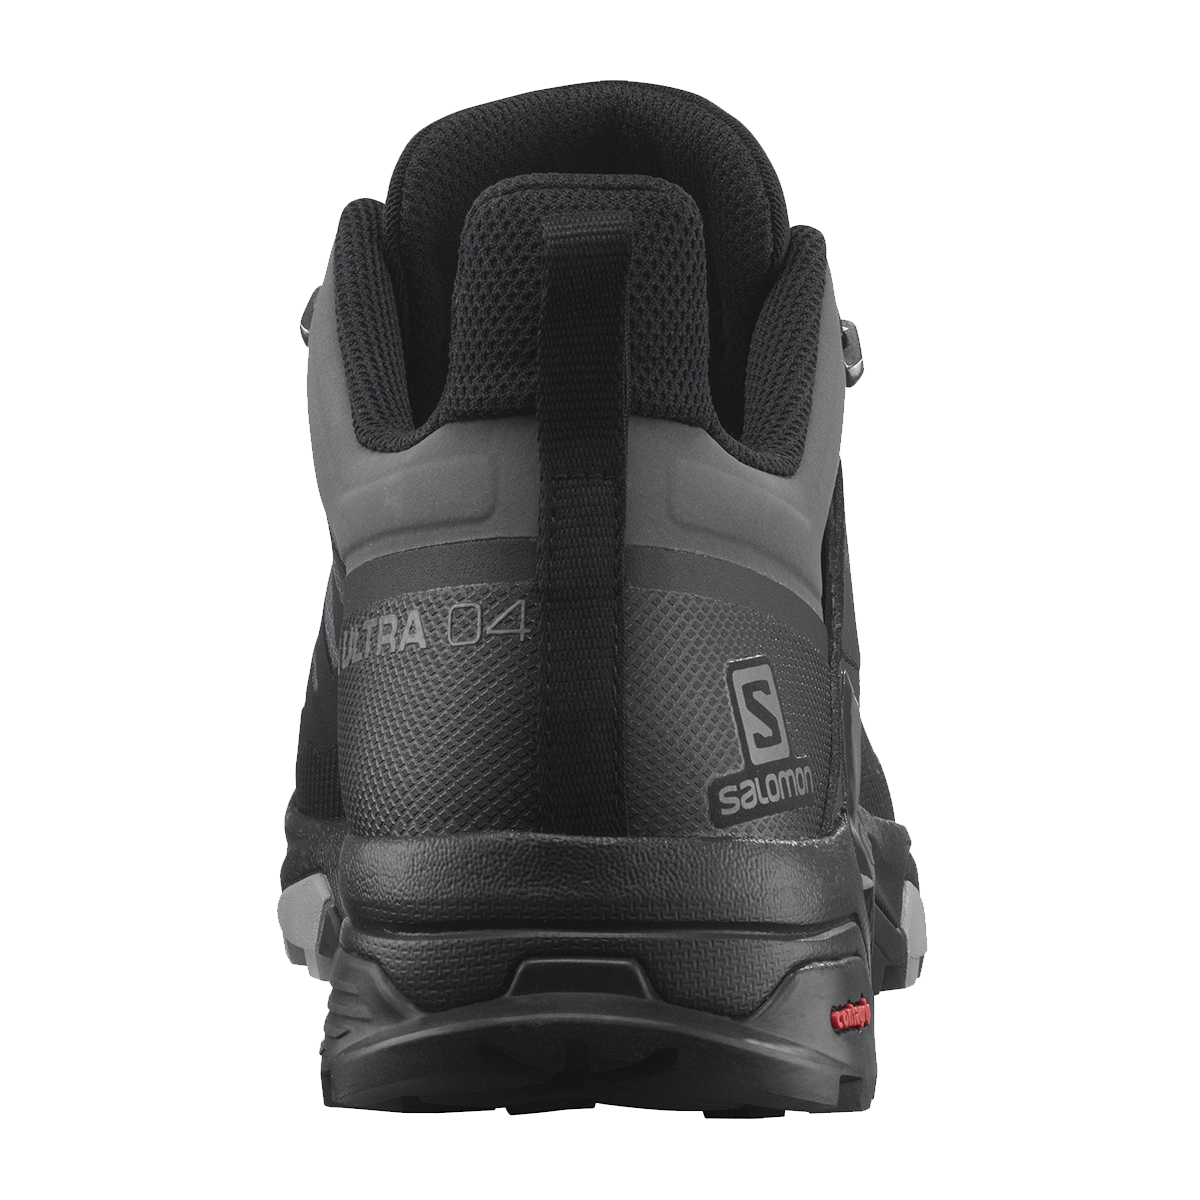 Salomon X Ultra 4 Gtx Outdoor Ayakkabı (L41385100)